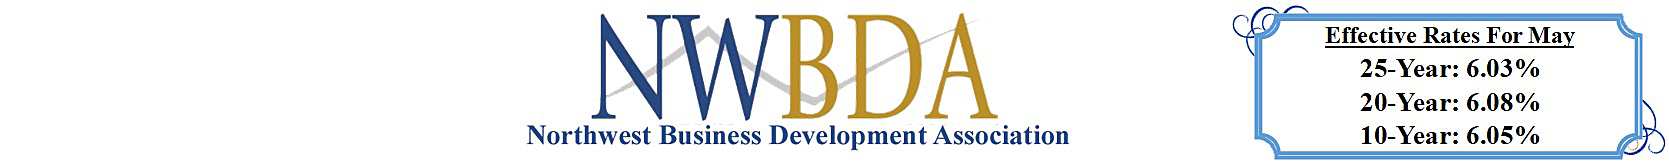 Northwest Business Development Association